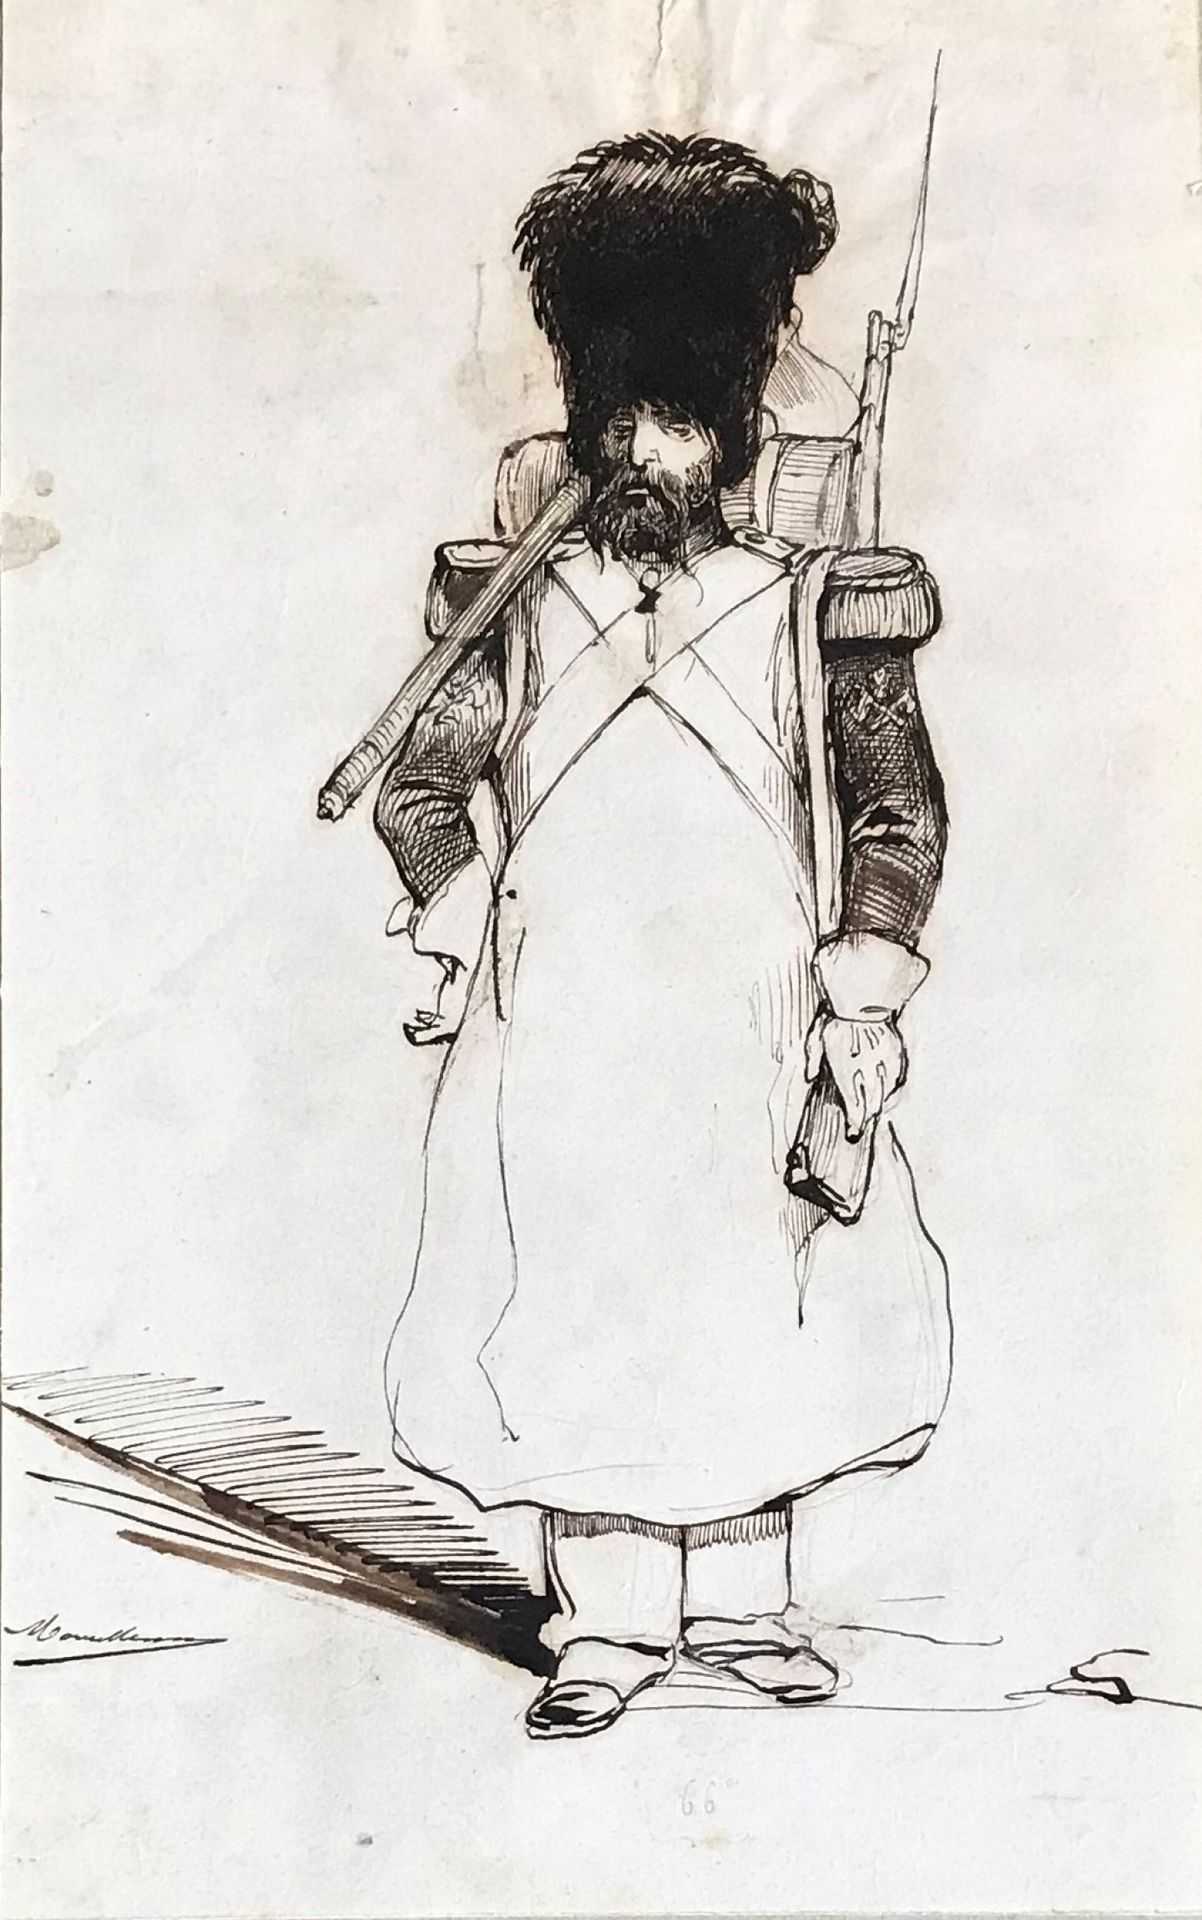 BOUILLERON 阿道夫-布瓦隆 ( 1820 - 1881 )

帝国的格林纳达

水墨画（片状

右下方有签名

23 x 15 cm

原样--小污点